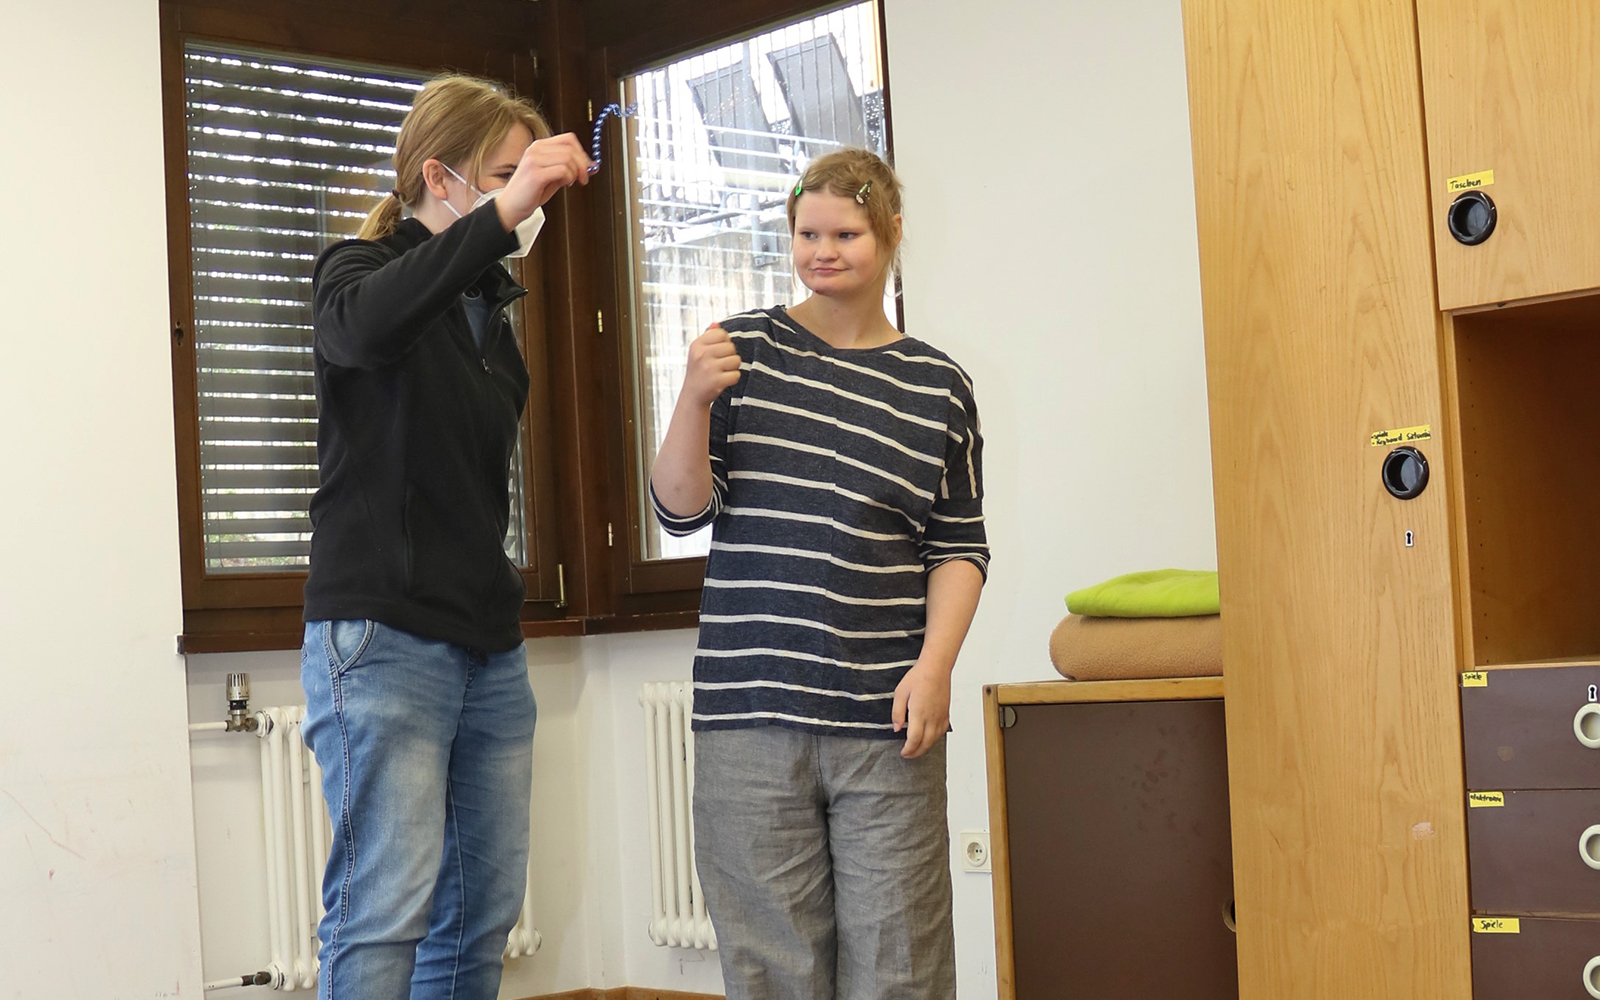 Adea steht mit Gruppenmitarbeiterin Katrin Warzlberger in einem Raum. Katrin zeigt Adea etwas in ihrer Hand und die Situation ist ruhig und friedlich.